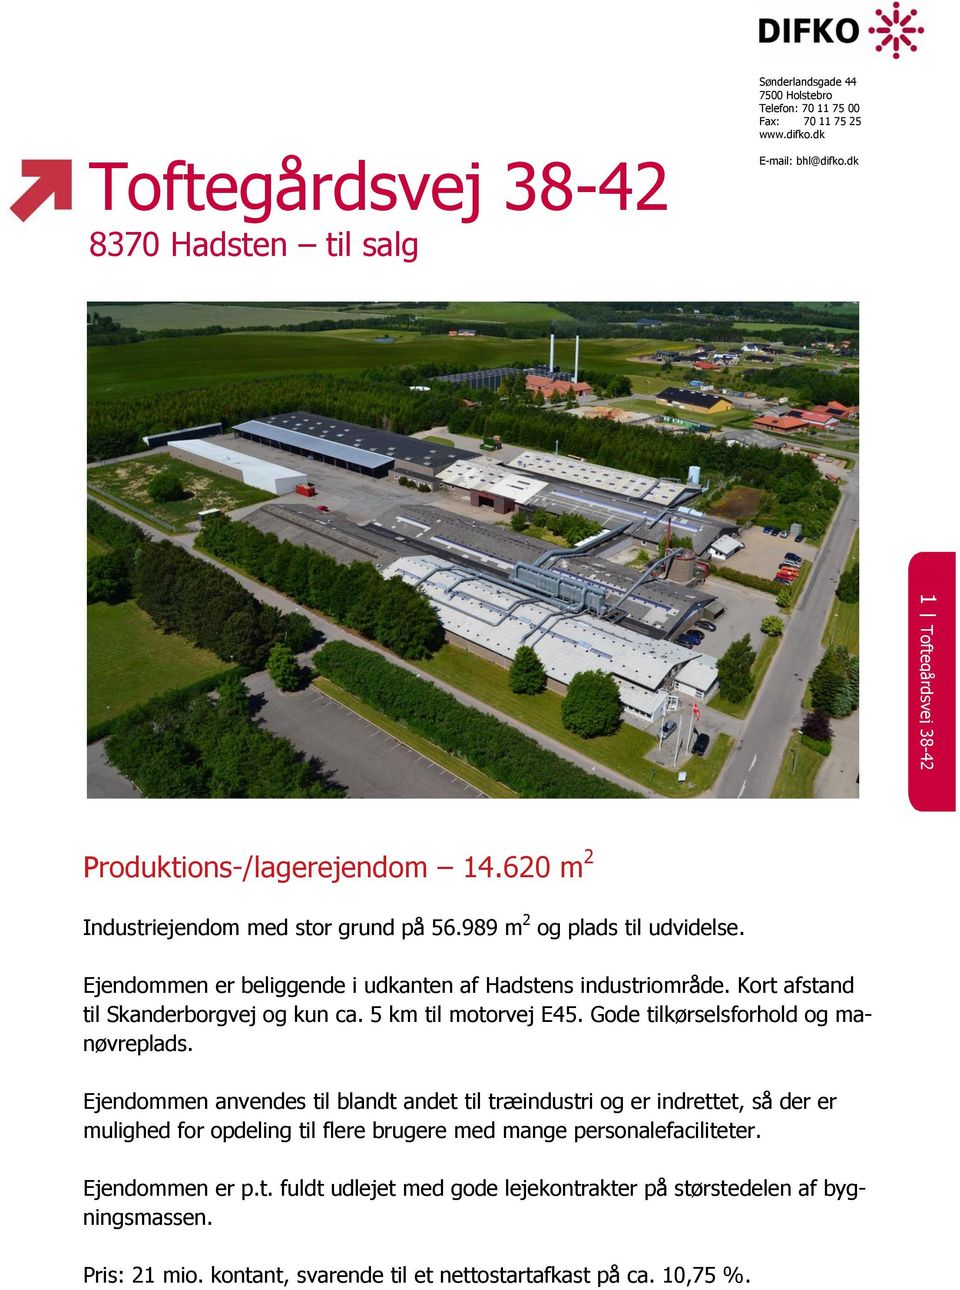 Ejendommen er beliggende i udkanten af Hadstens industriområde. Kort afstand til Skanderborgvej og kun ca. 5 km til motorvej E45. Gode tilkørselsforhold og manøvreplads.